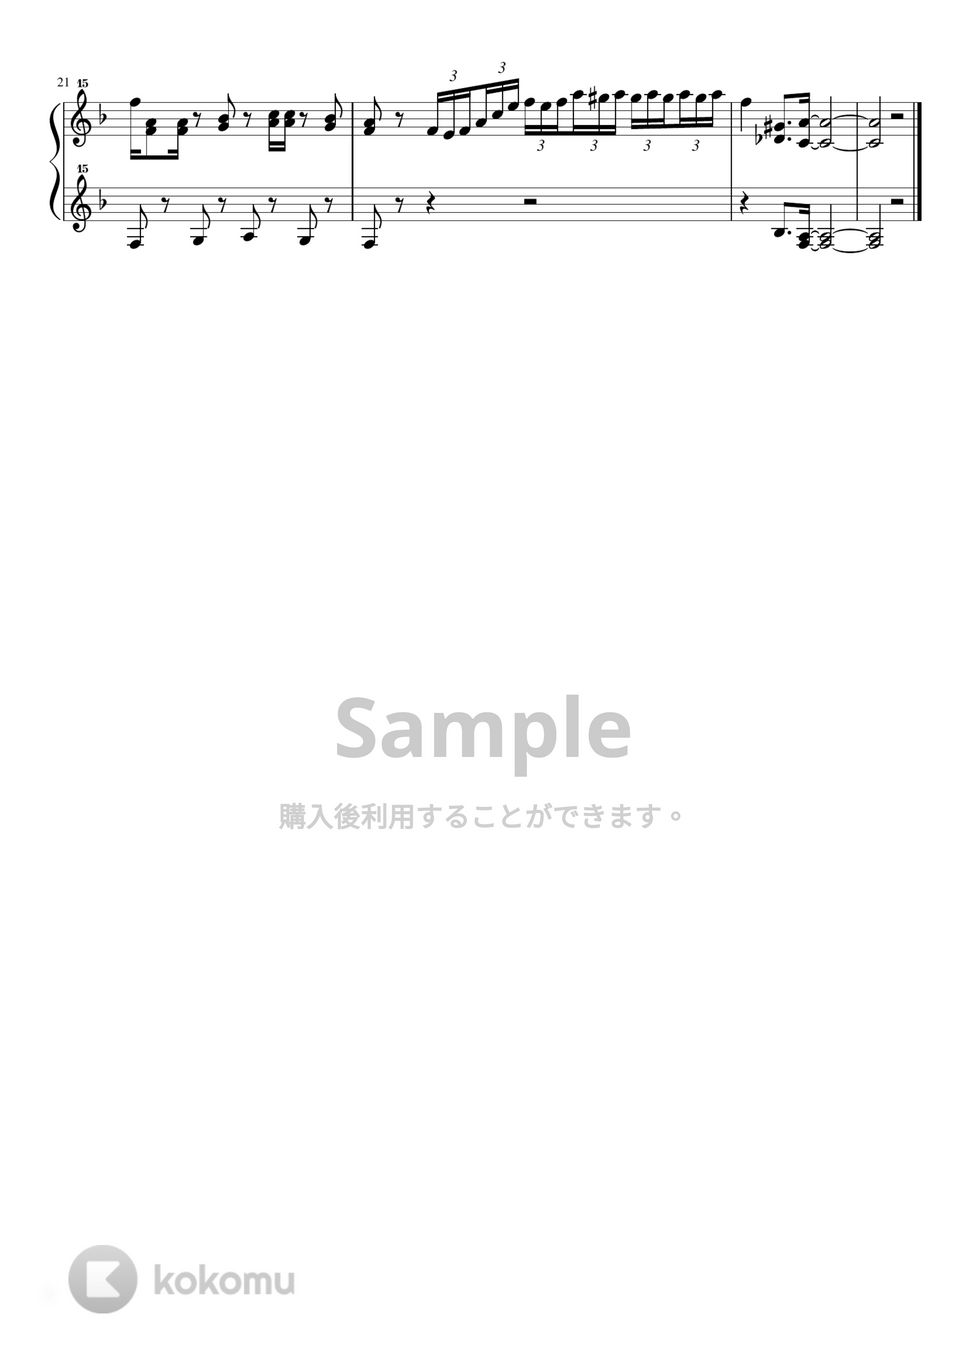 竹内まりや - すてきなホリデイ (トイピアノ / 32鍵盤 / クリスマス) by 川西三裕